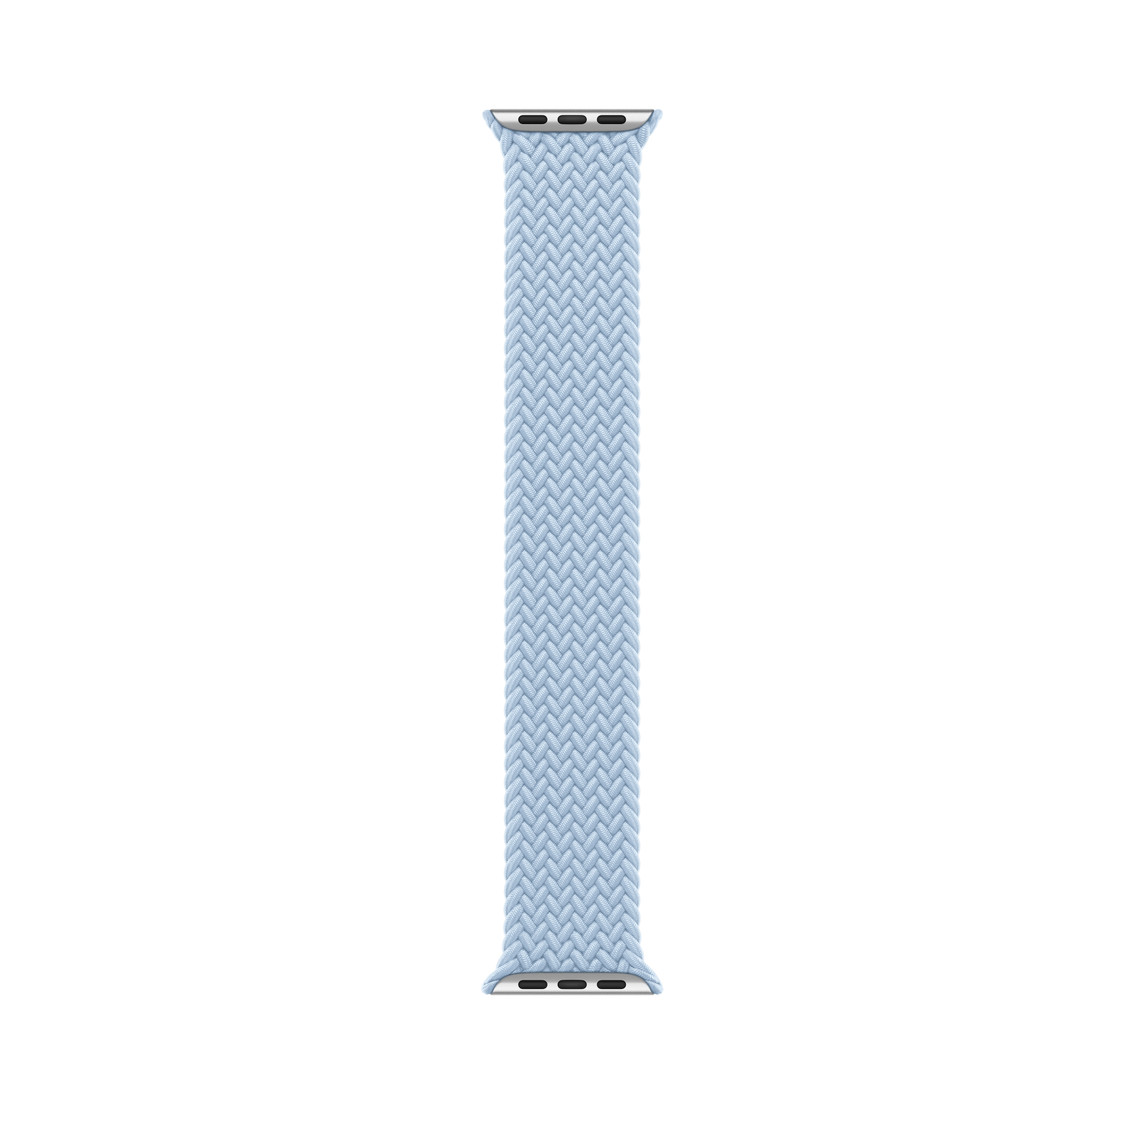 Correa uniloop trenzada azul claro, hecha de poliéster tejido e hilos de silicona sin hebillas ni cierres